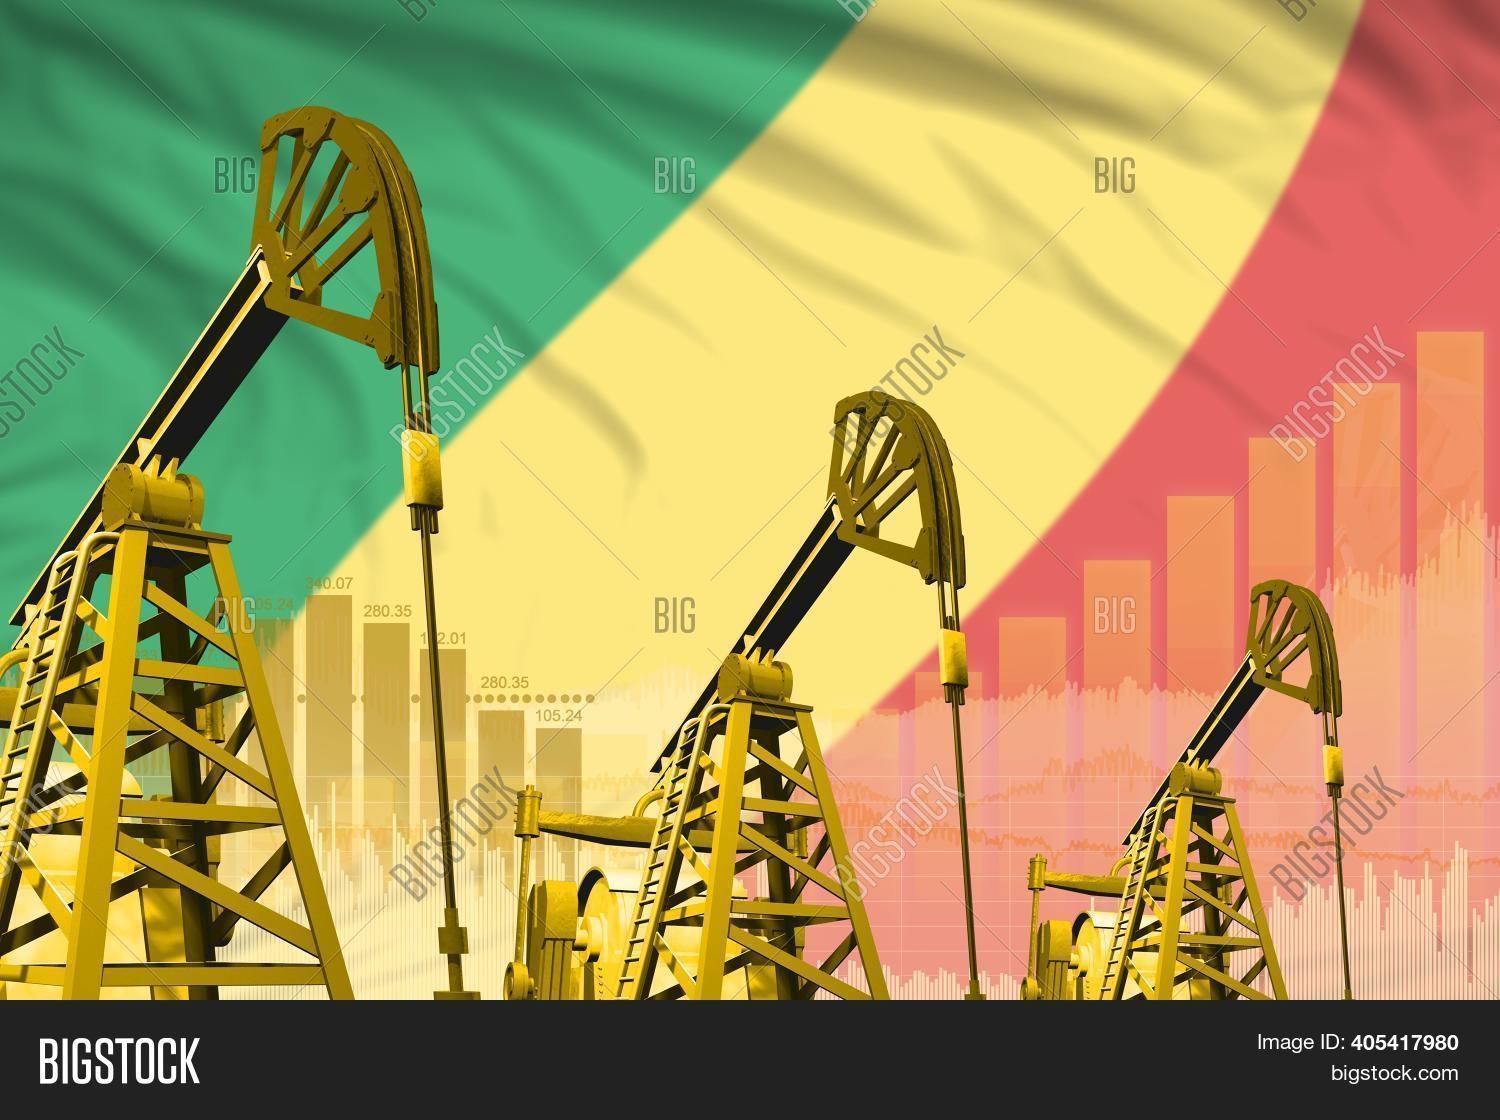 Congo công bố dự thảo luật tài chính năm 2022, doanh thu từ dầu mỏ sẽ tăng 13%